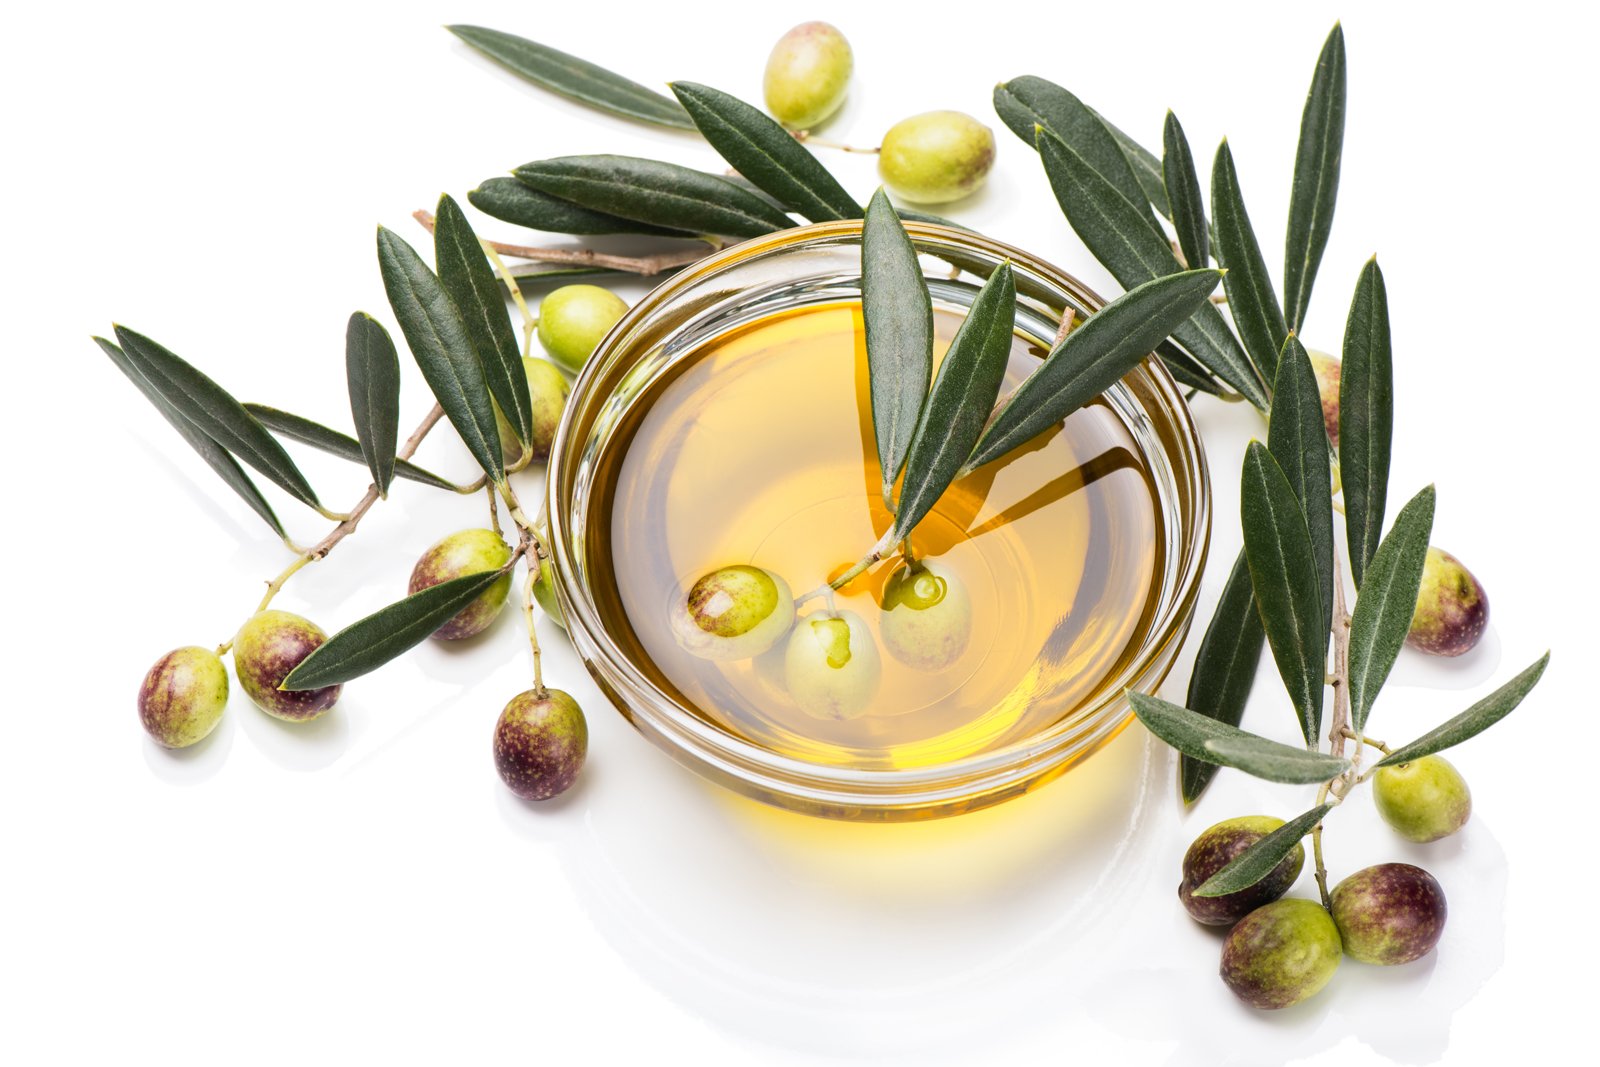 EXTRA VIRGIN OLIVE OIL FROM GREECE | زيت الزيتون البكر الممتاز